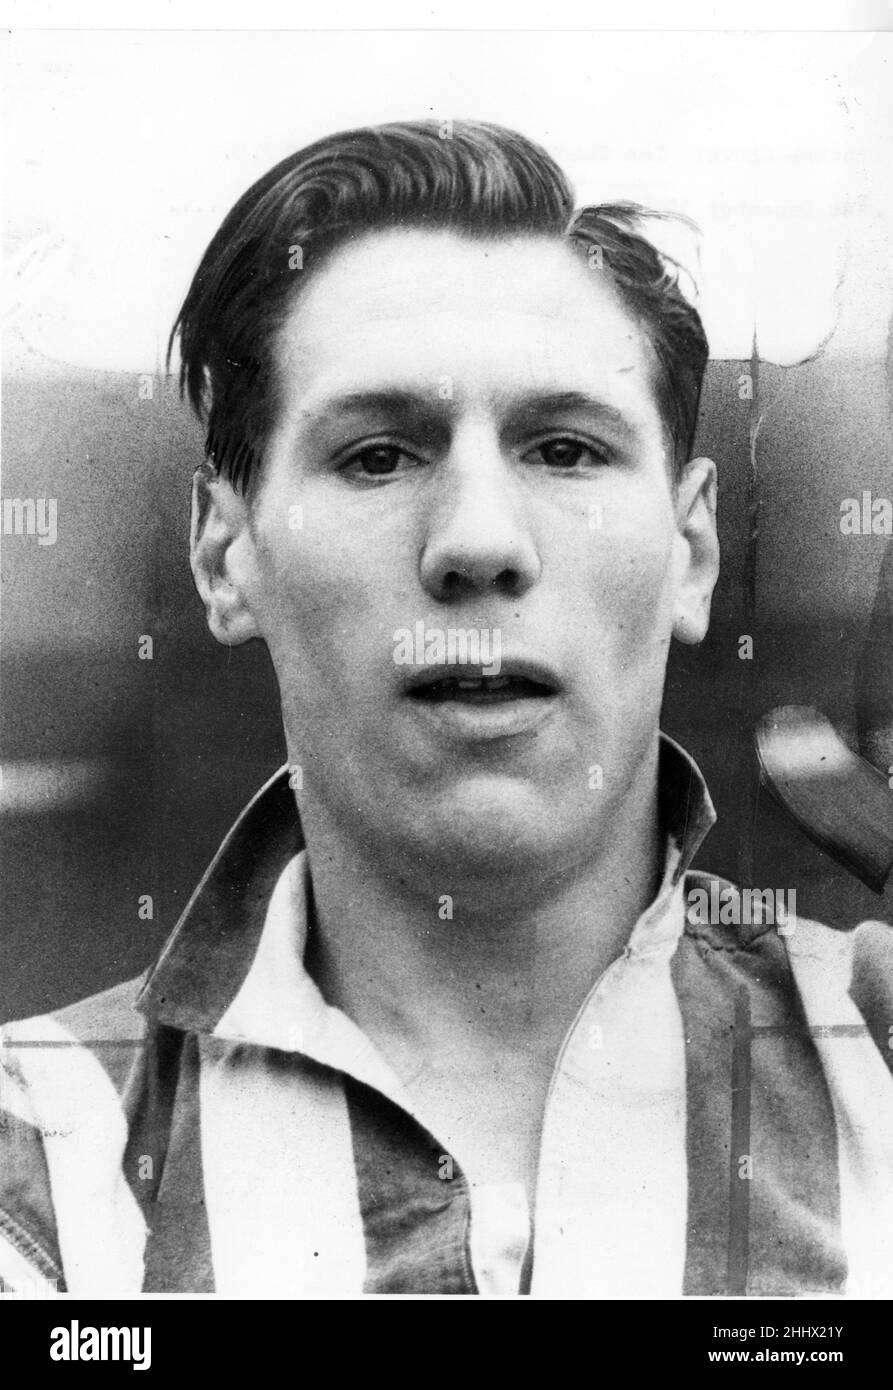 Len Shackleton Sunderland football player December 1948. Stock Photo